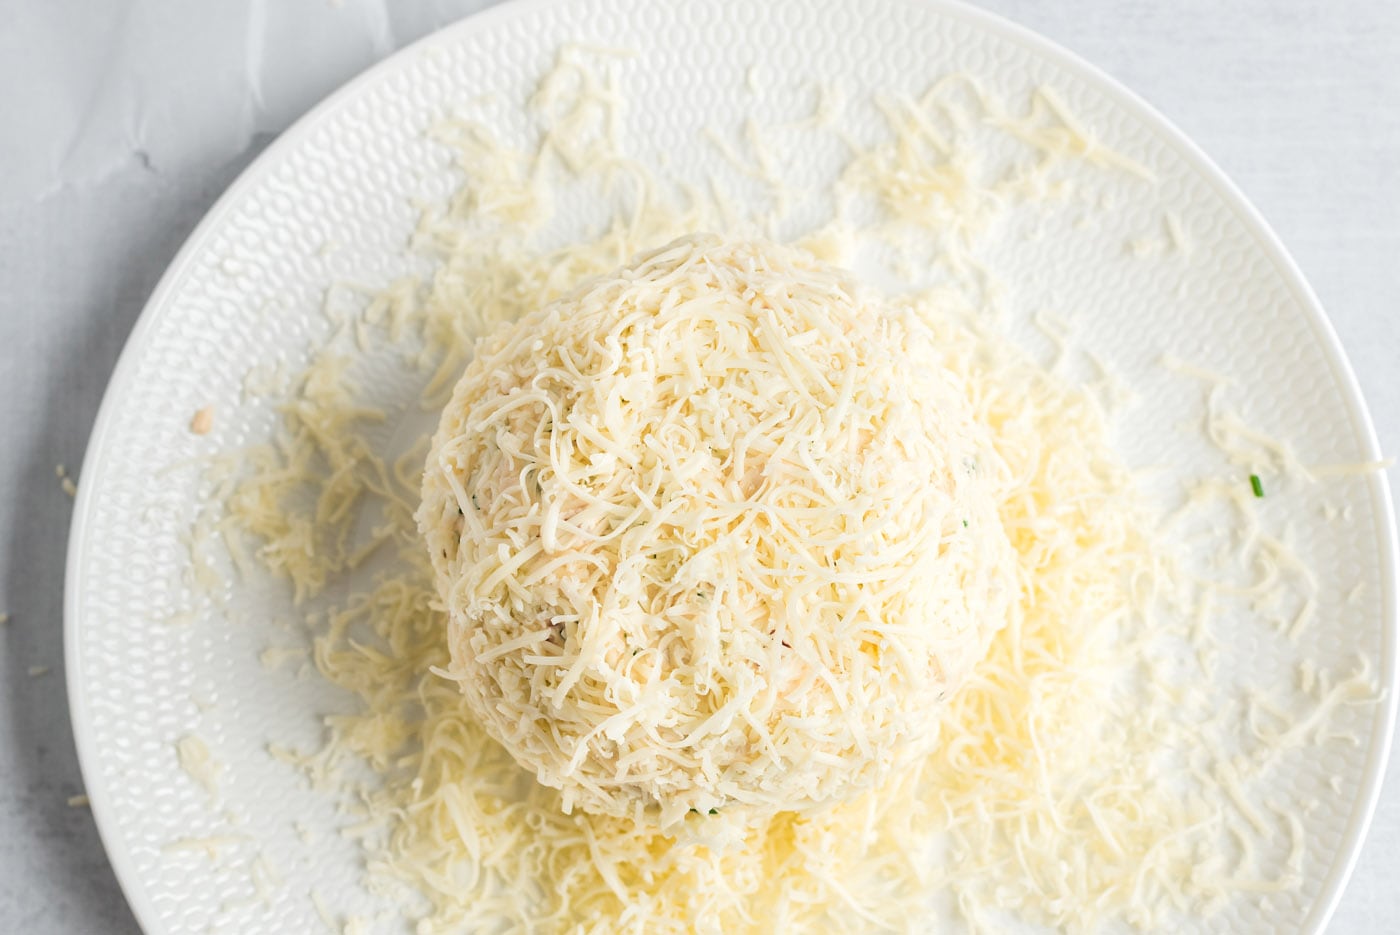 mozzarella cheese on gouda cheeseball